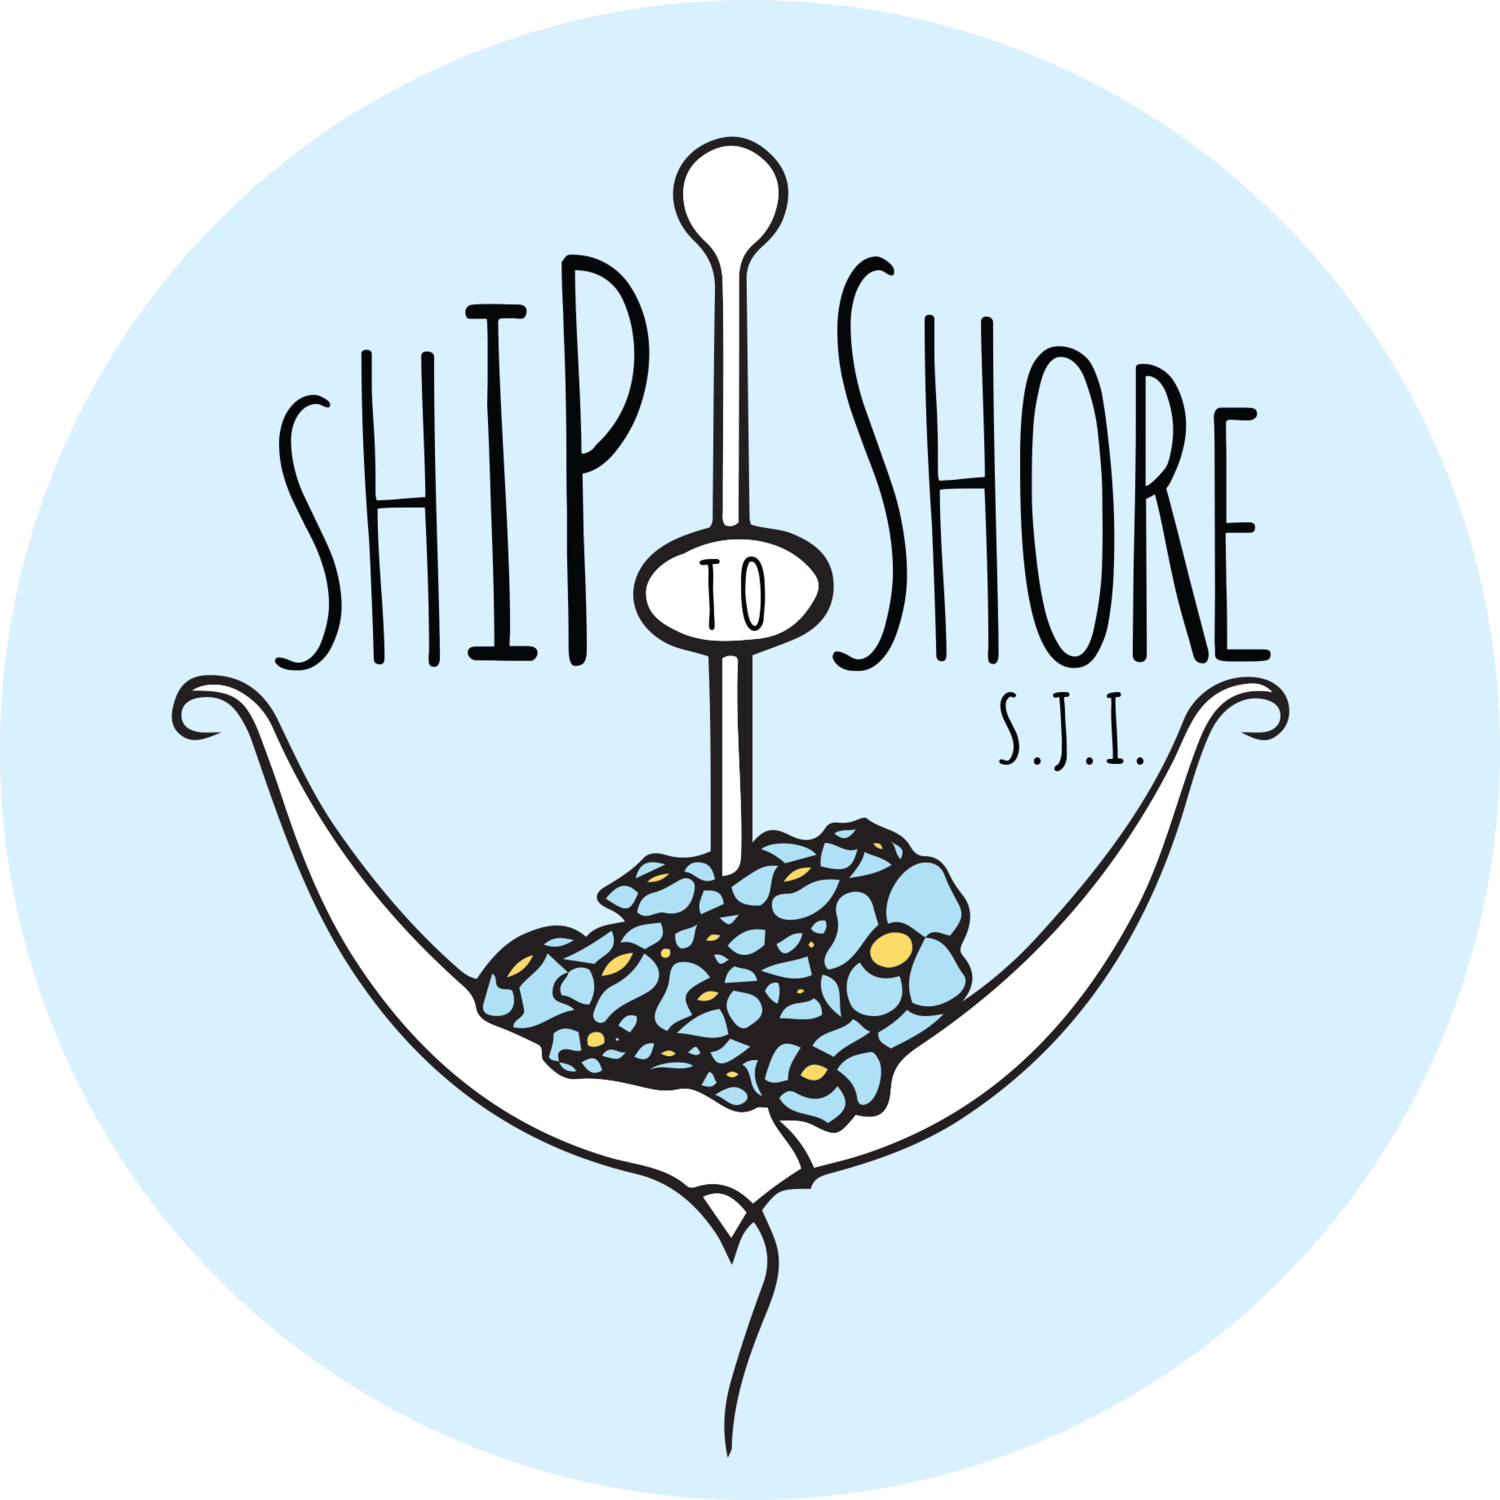 Ship to Shore SJI